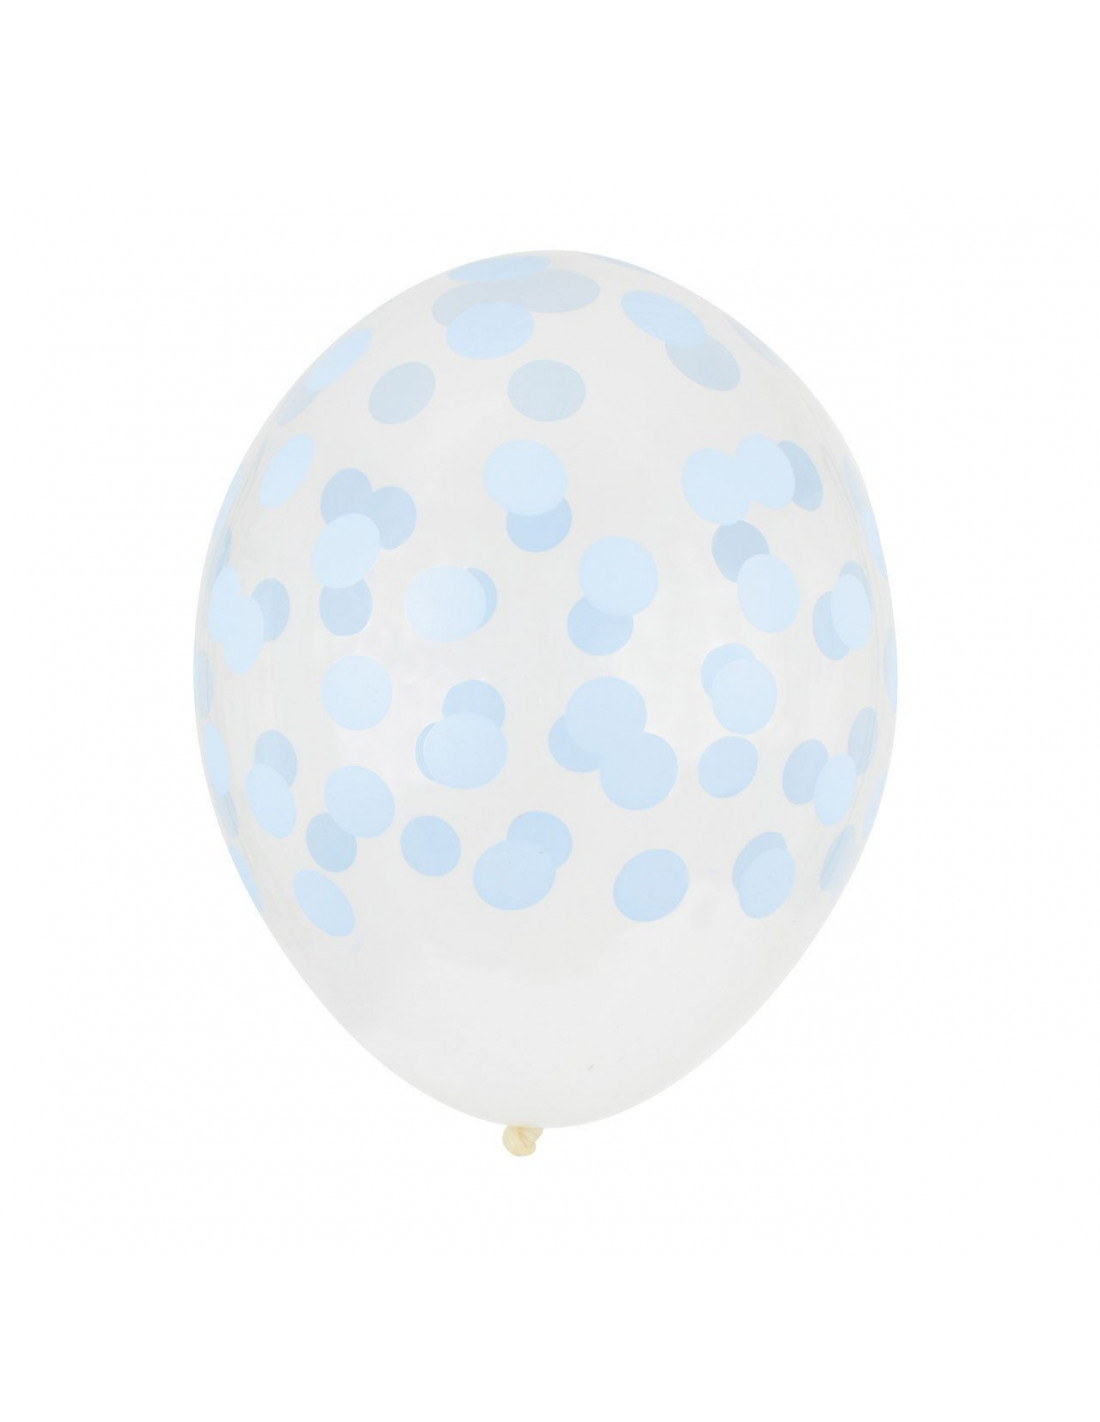 Lot de 6 ballons bleus ciel à pois blancs : déco anniversaire